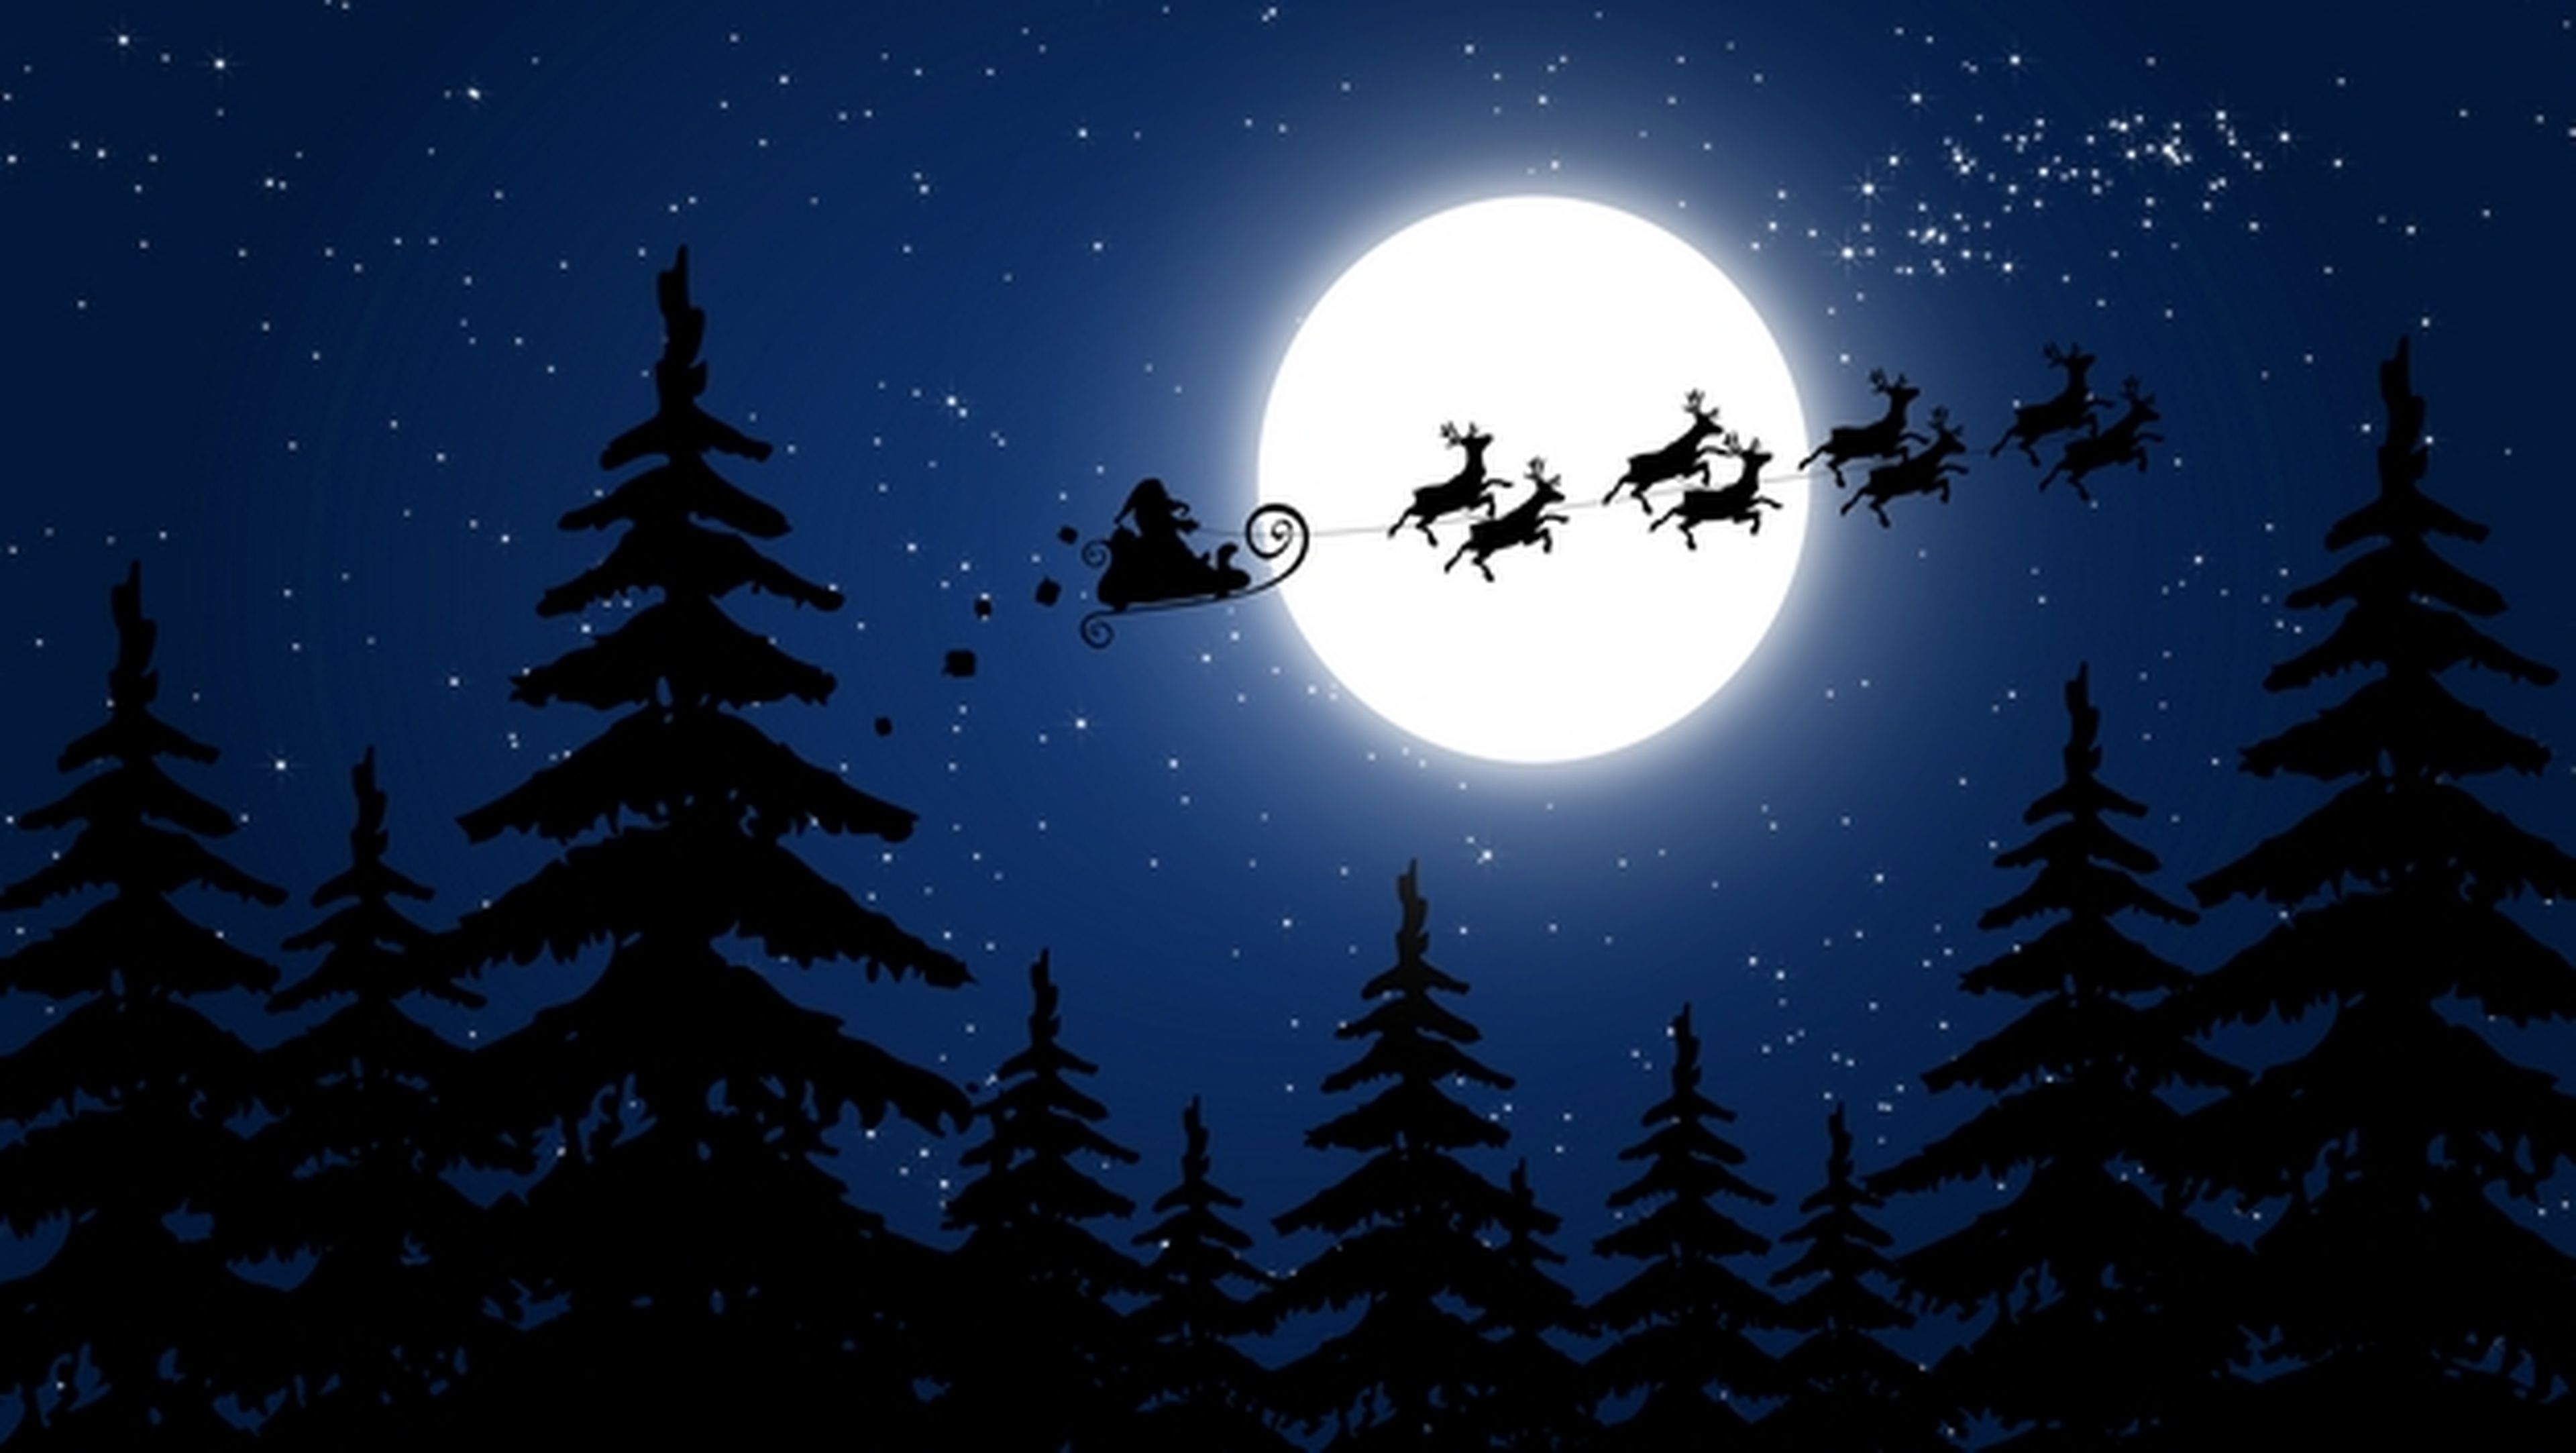 Cómo ver a Papa Noel volando sobre las estrellas en Navidad | Computer Hoy